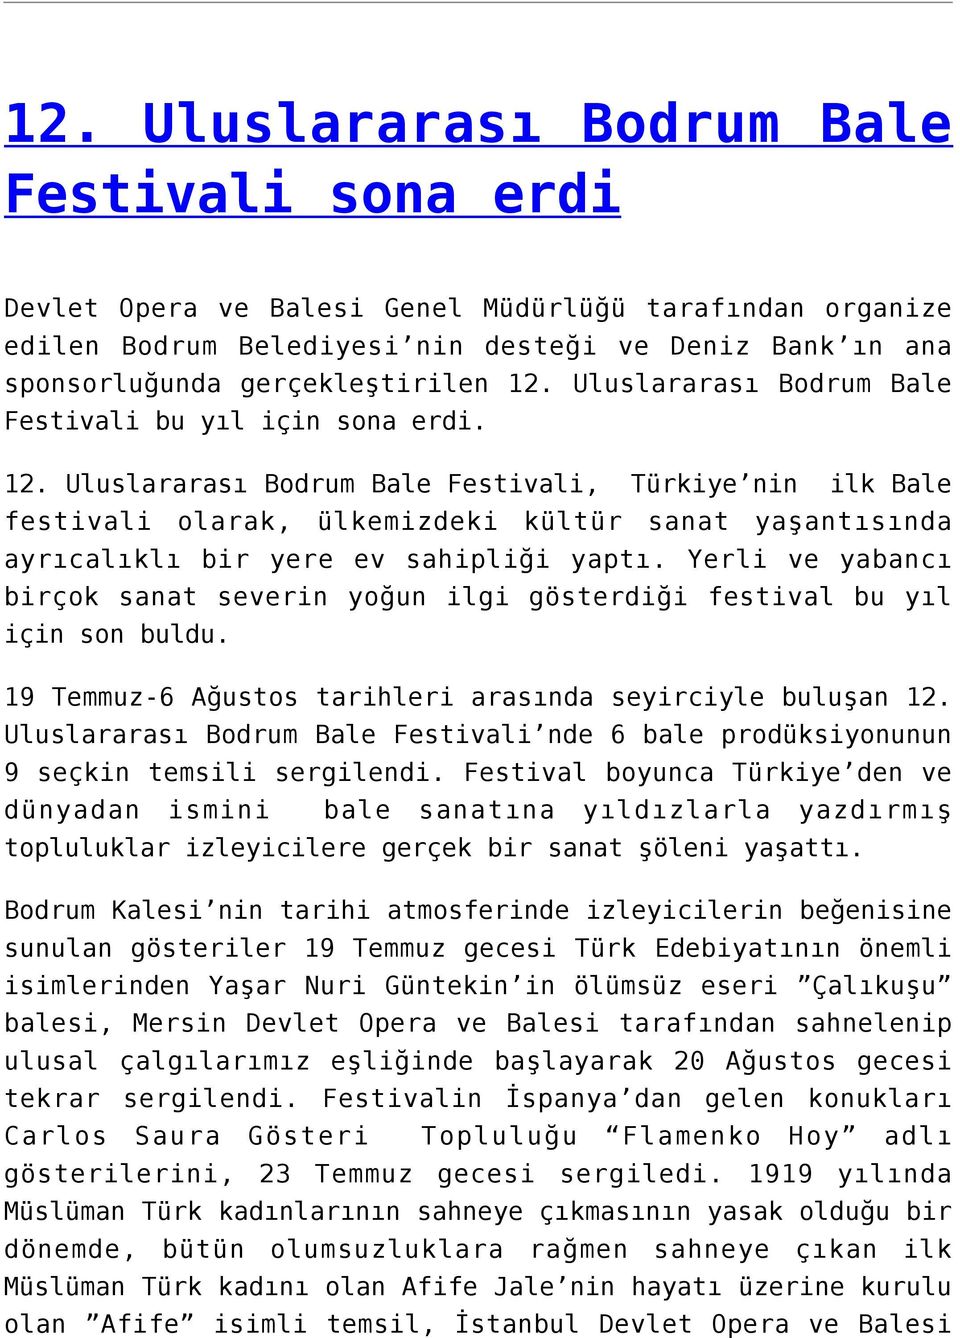 Uluslararası Bodrum Bale Festivali, Türkiye nin ilk Bale festivali olarak, ülkemizdeki kültür sanat yaşantısında ayrıcalıklı bir yere ev sahipliği yaptı.